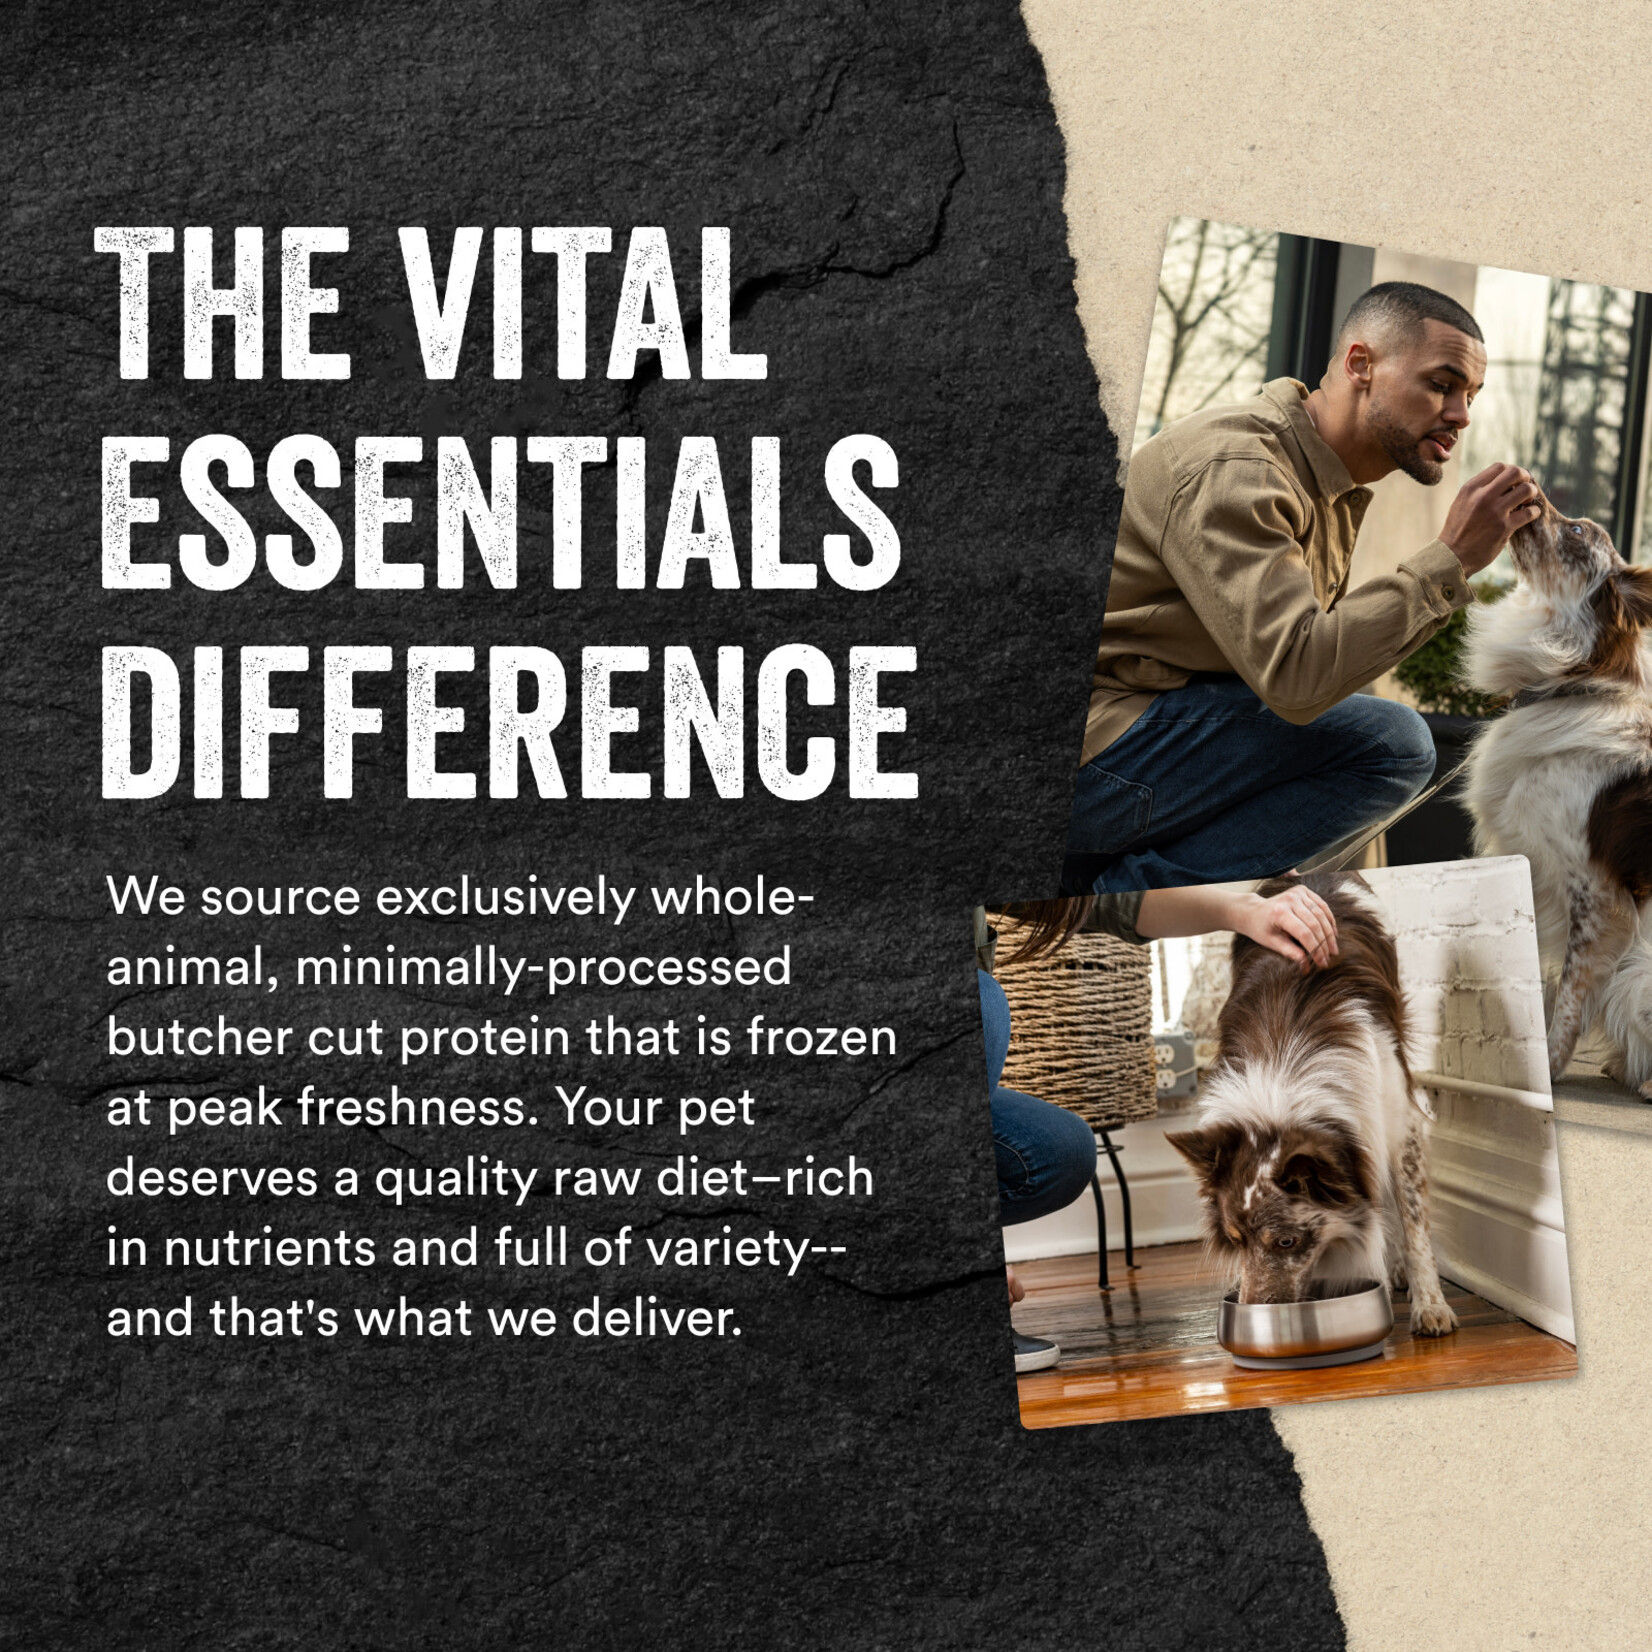 Vital Essentials Freeze-Dried Bully Sticks Dog Treats